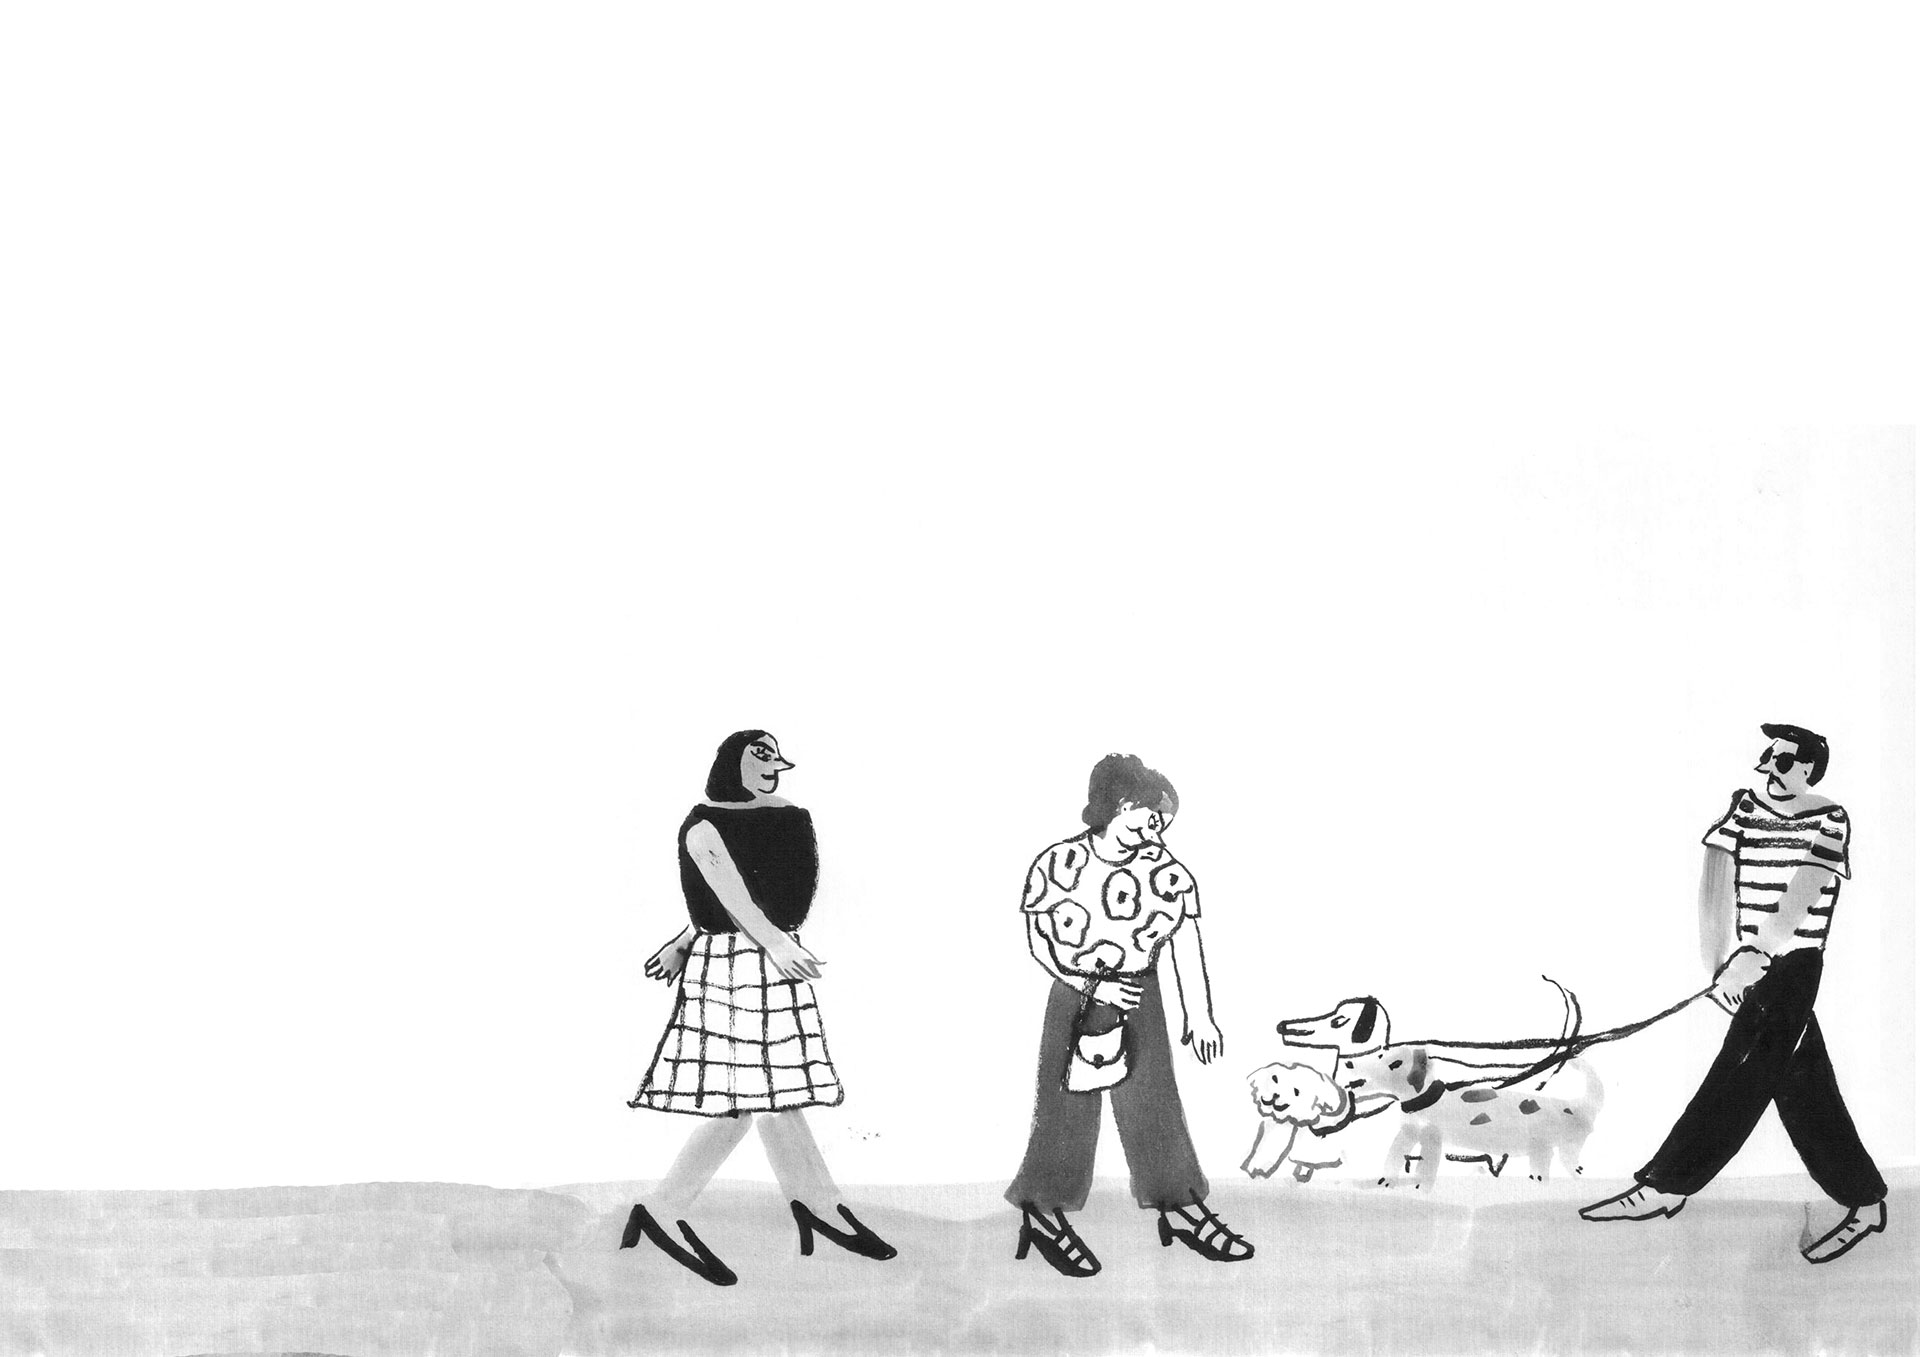 Una de las ilustraciones de María Luque en "Quiero decir te amo" de Mariano Tenconi Blanco.